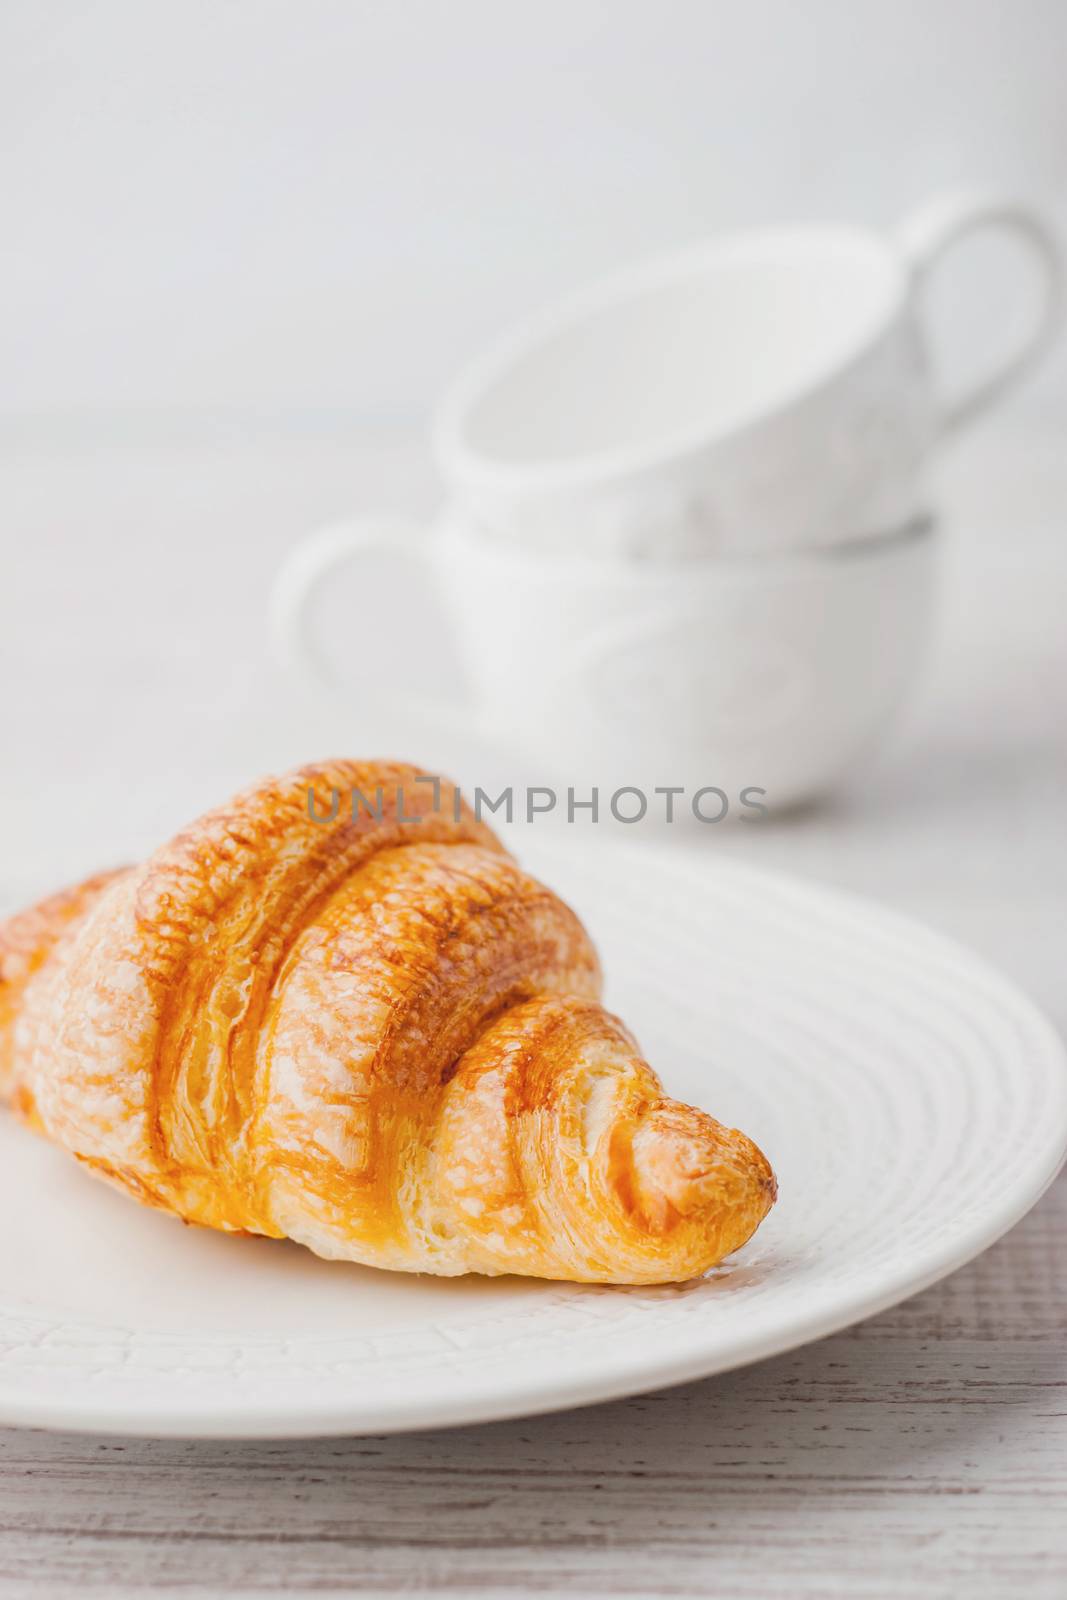 Croissant on the white plate by Deniskarpenkov